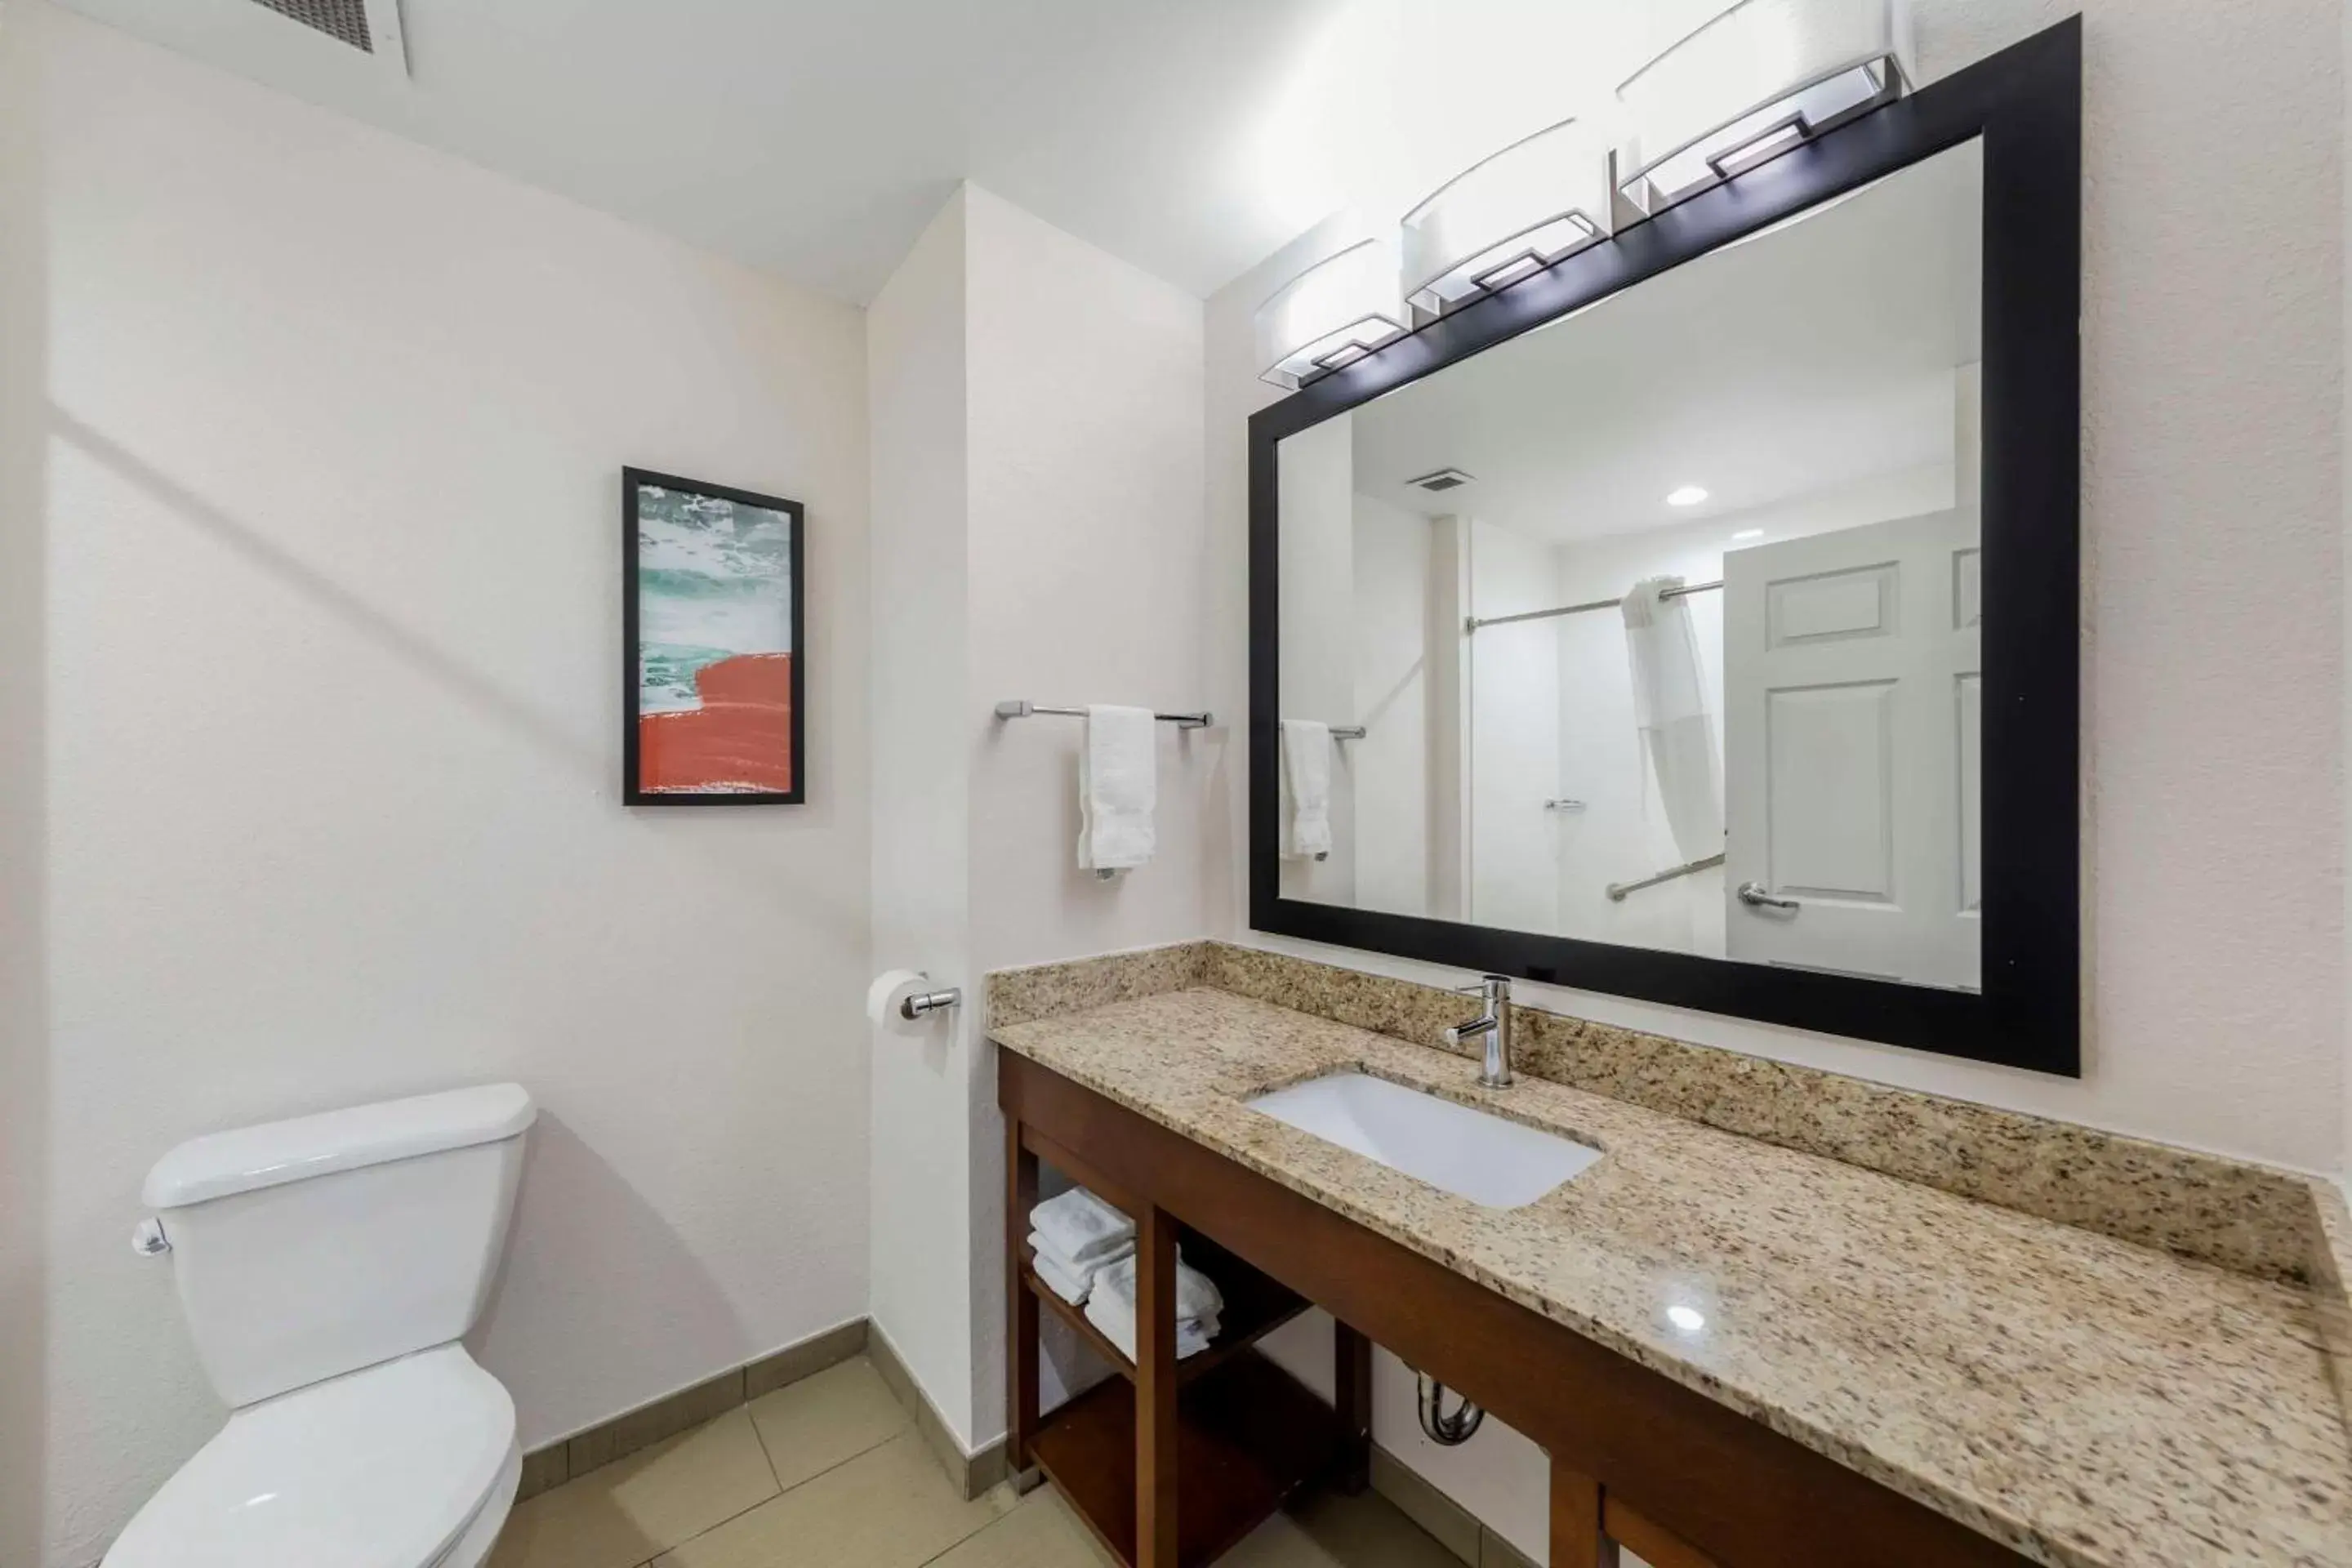 Bedroom, Bathroom in Comfort Inn US Hwy 80